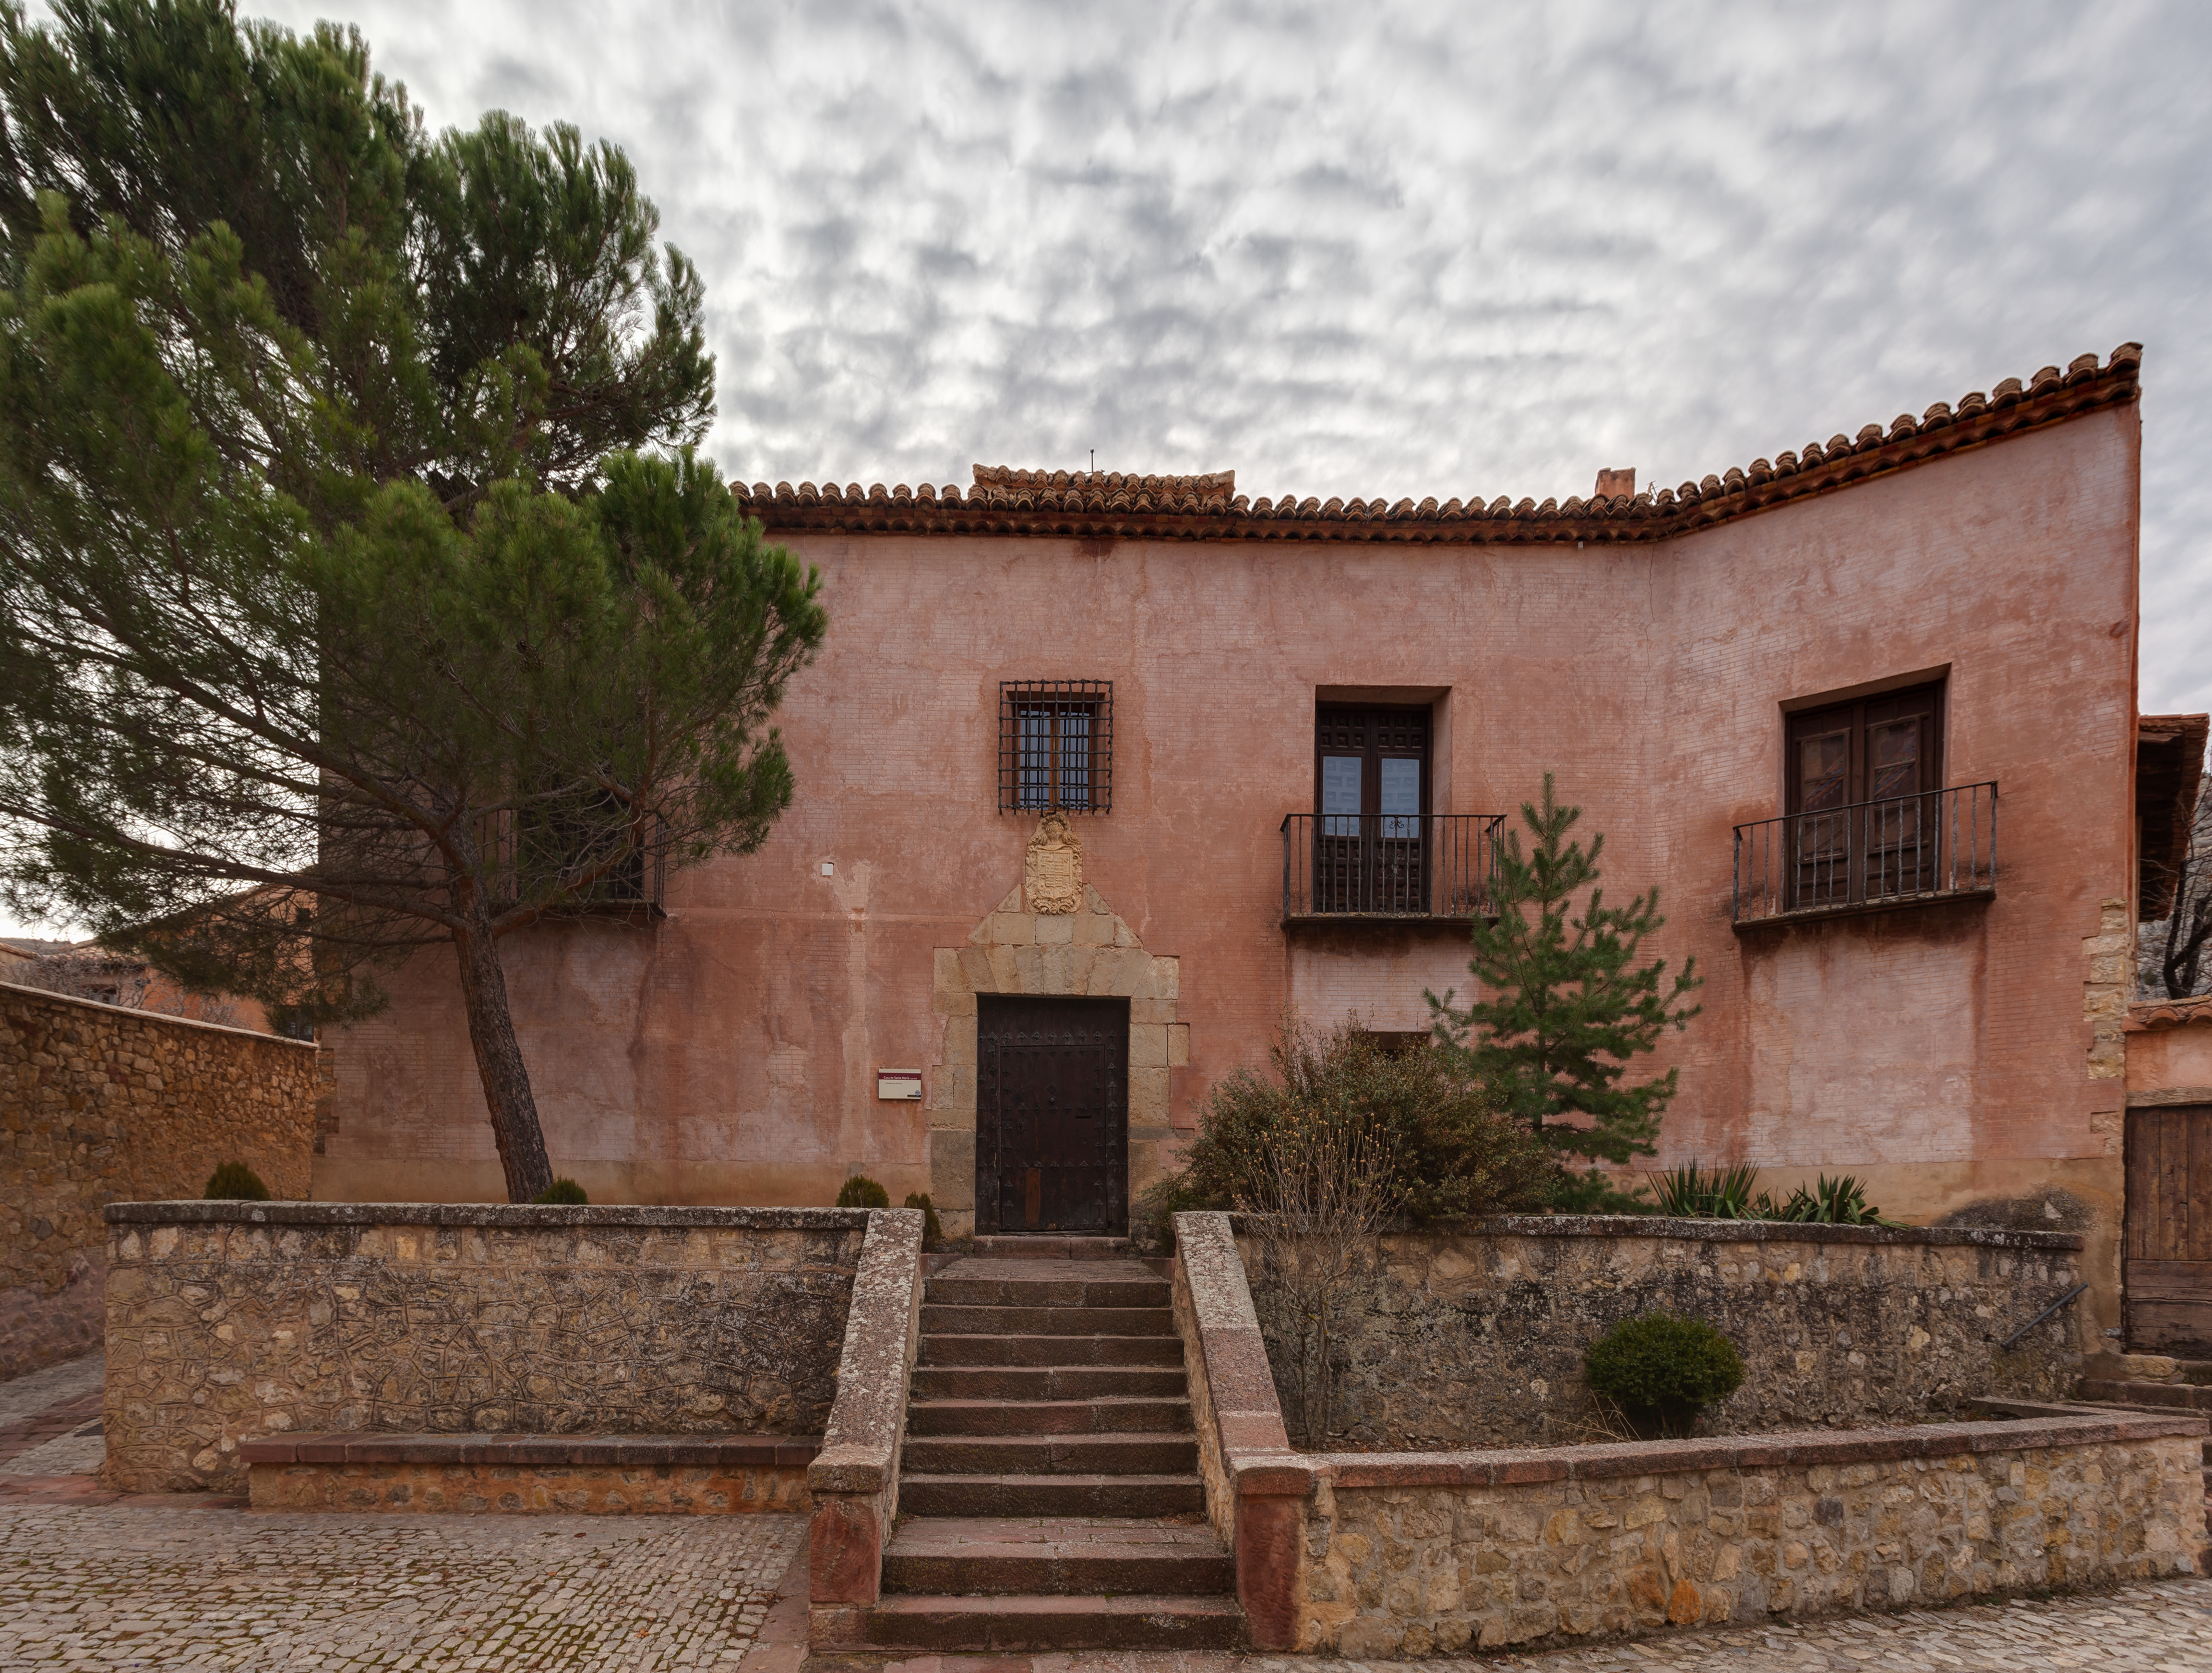 Albarracín, Teruel, España, 2014-01-10, DD 058-060 HDR